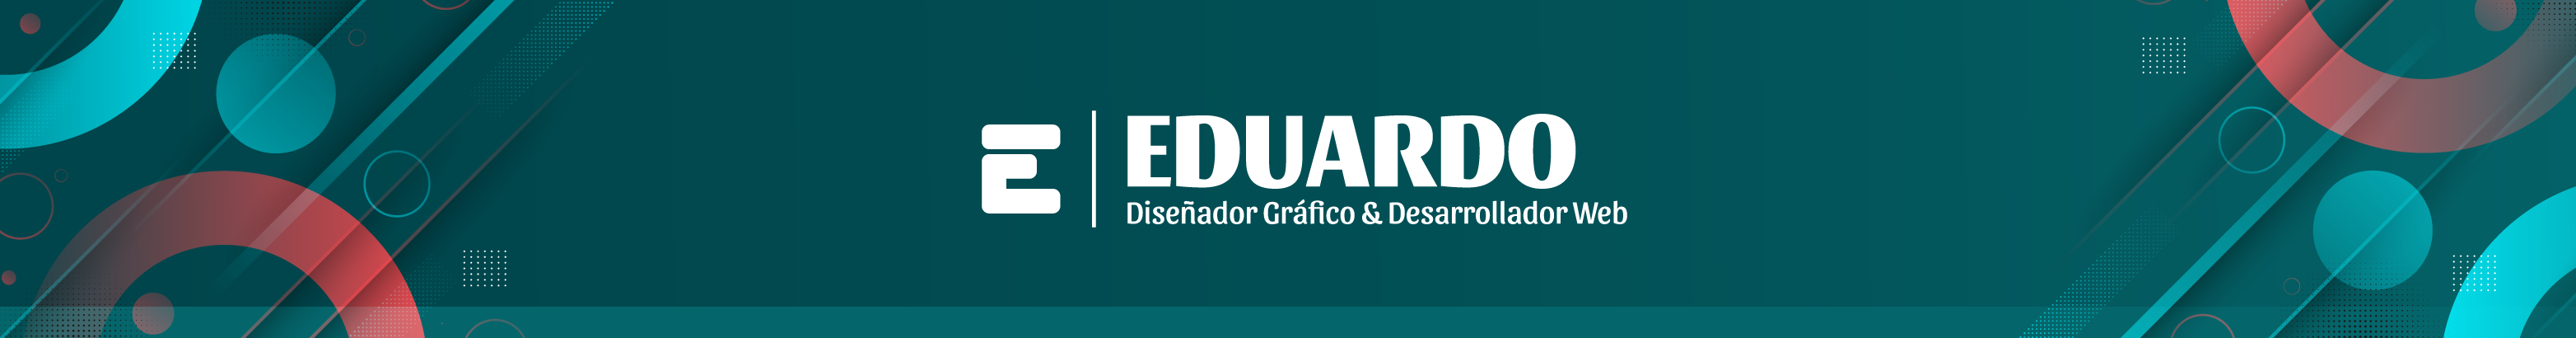 F Eduardo Huaranga Quispe's profile banner